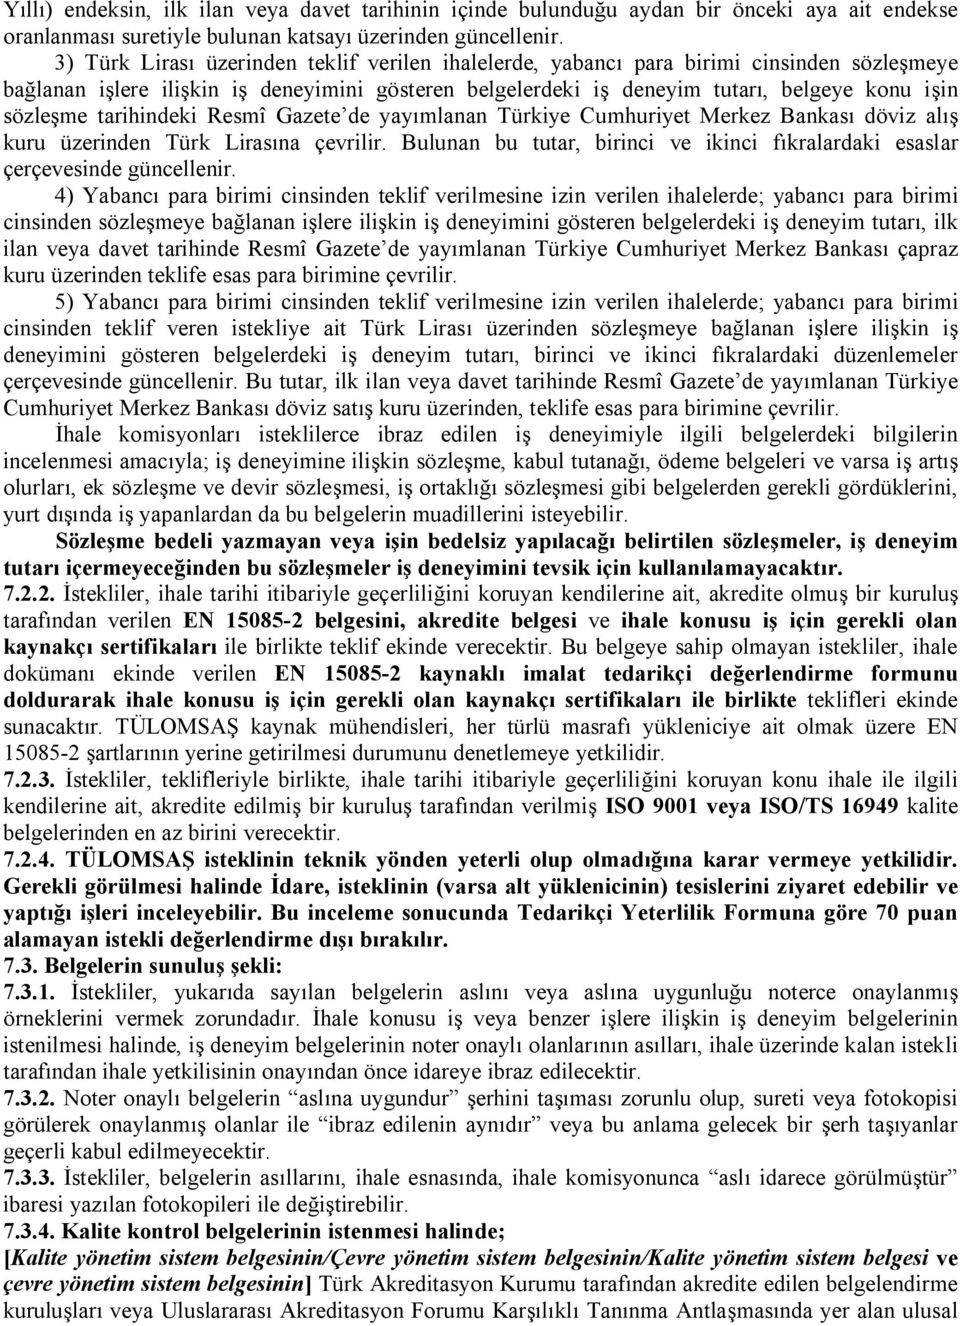 tarihindeki Resmî Gazete de yayımlanan Türkiye Cumhuriyet Merkez Bankası döviz alış kuru üzerinden Türk Lirasına çevrilir.